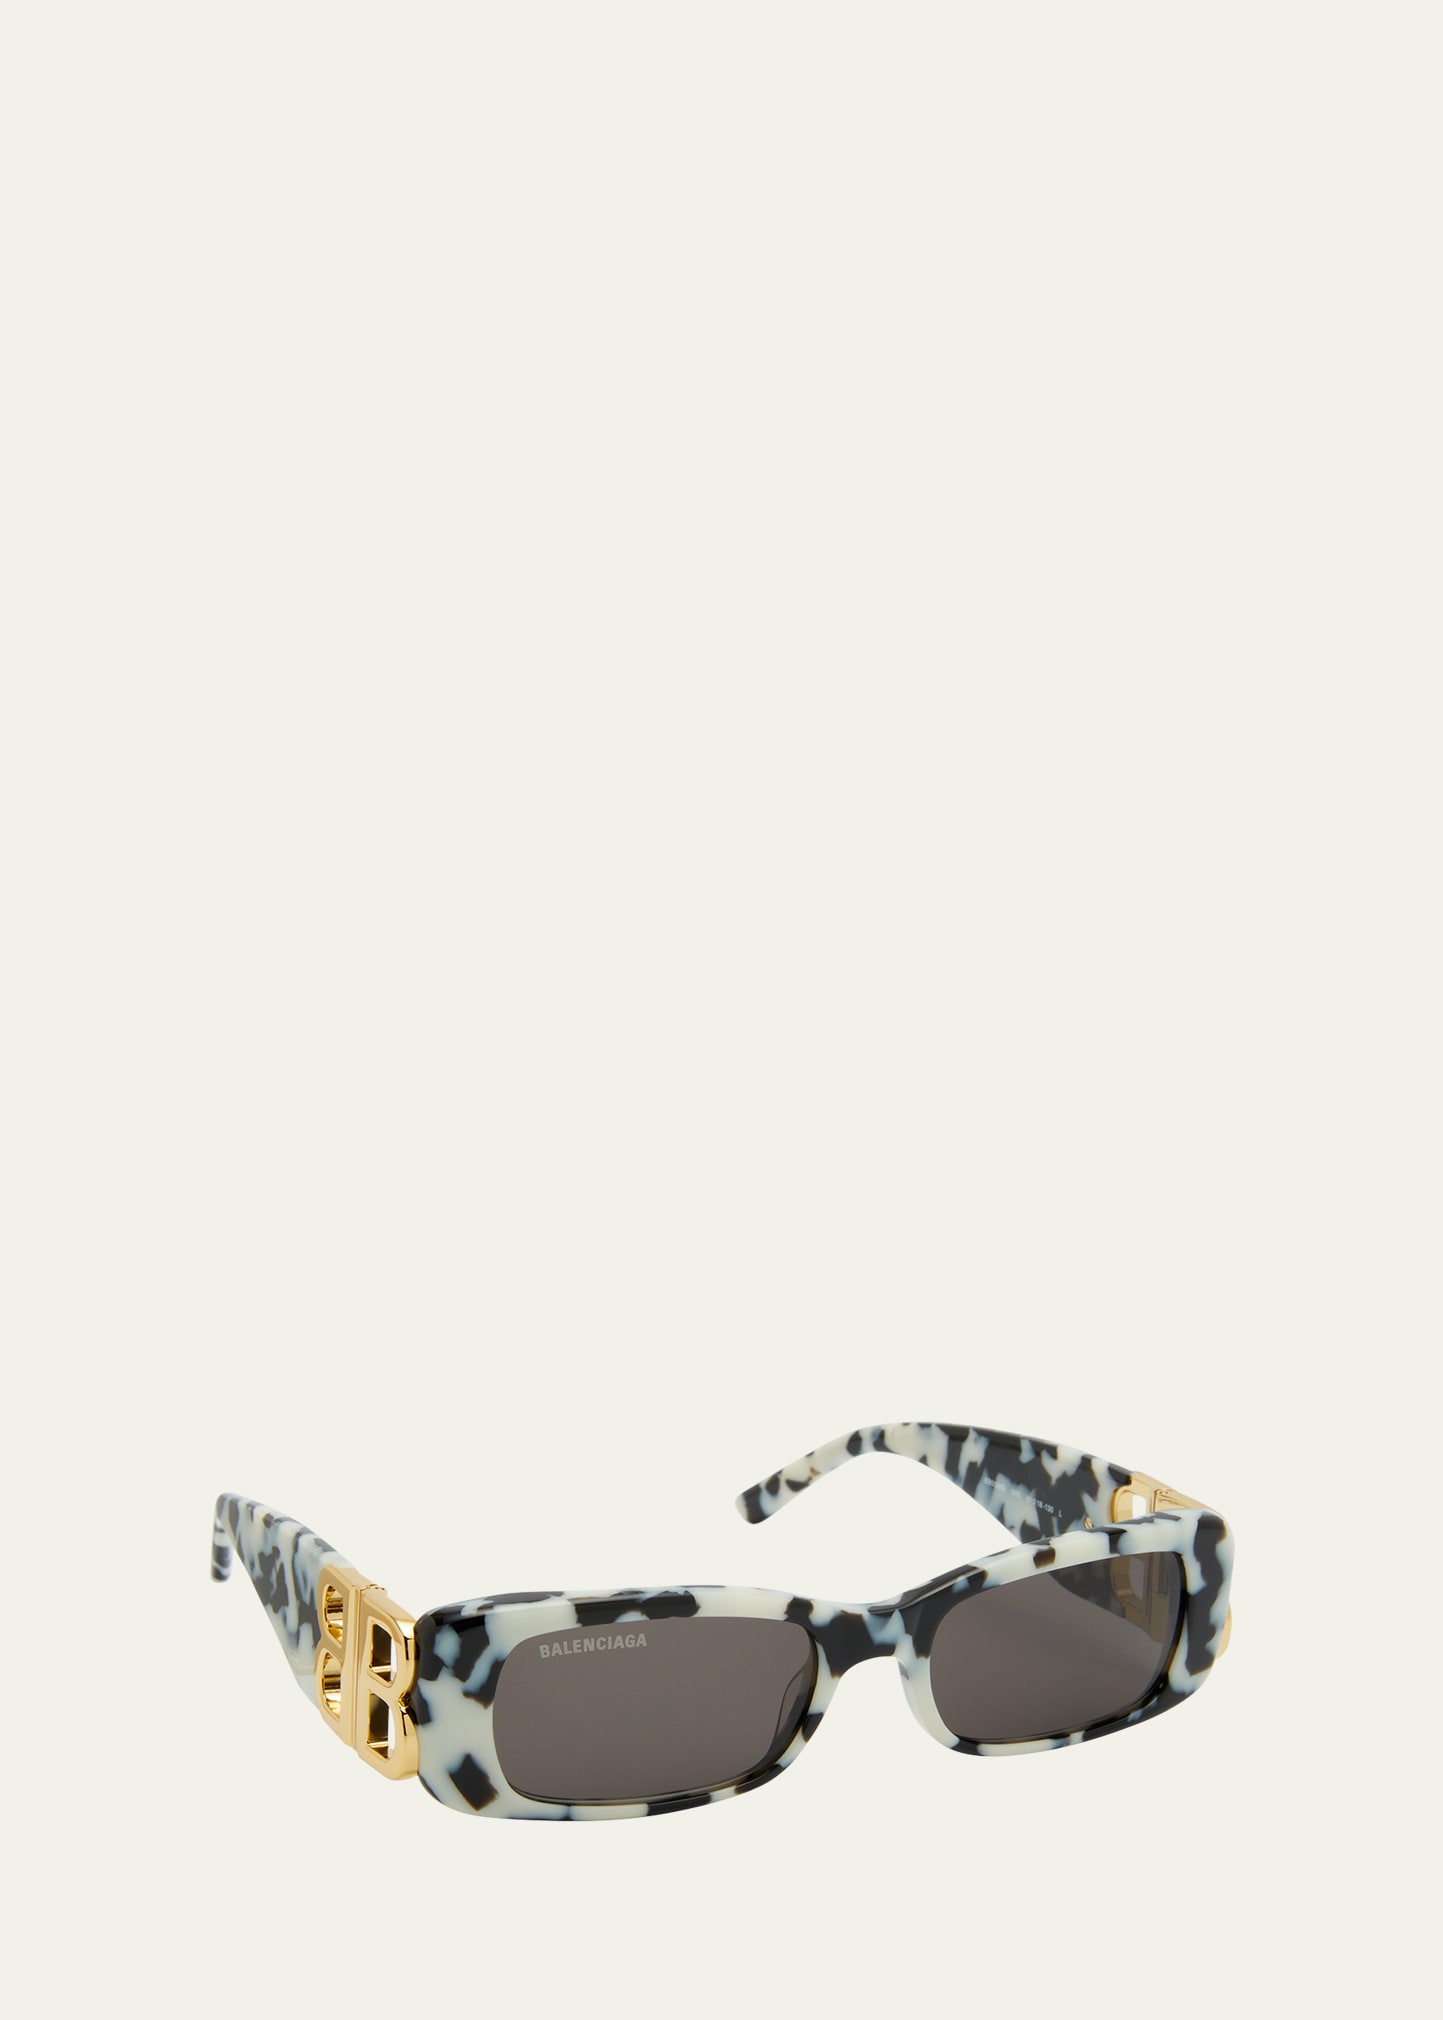 tweed chanel sunglasses vintage